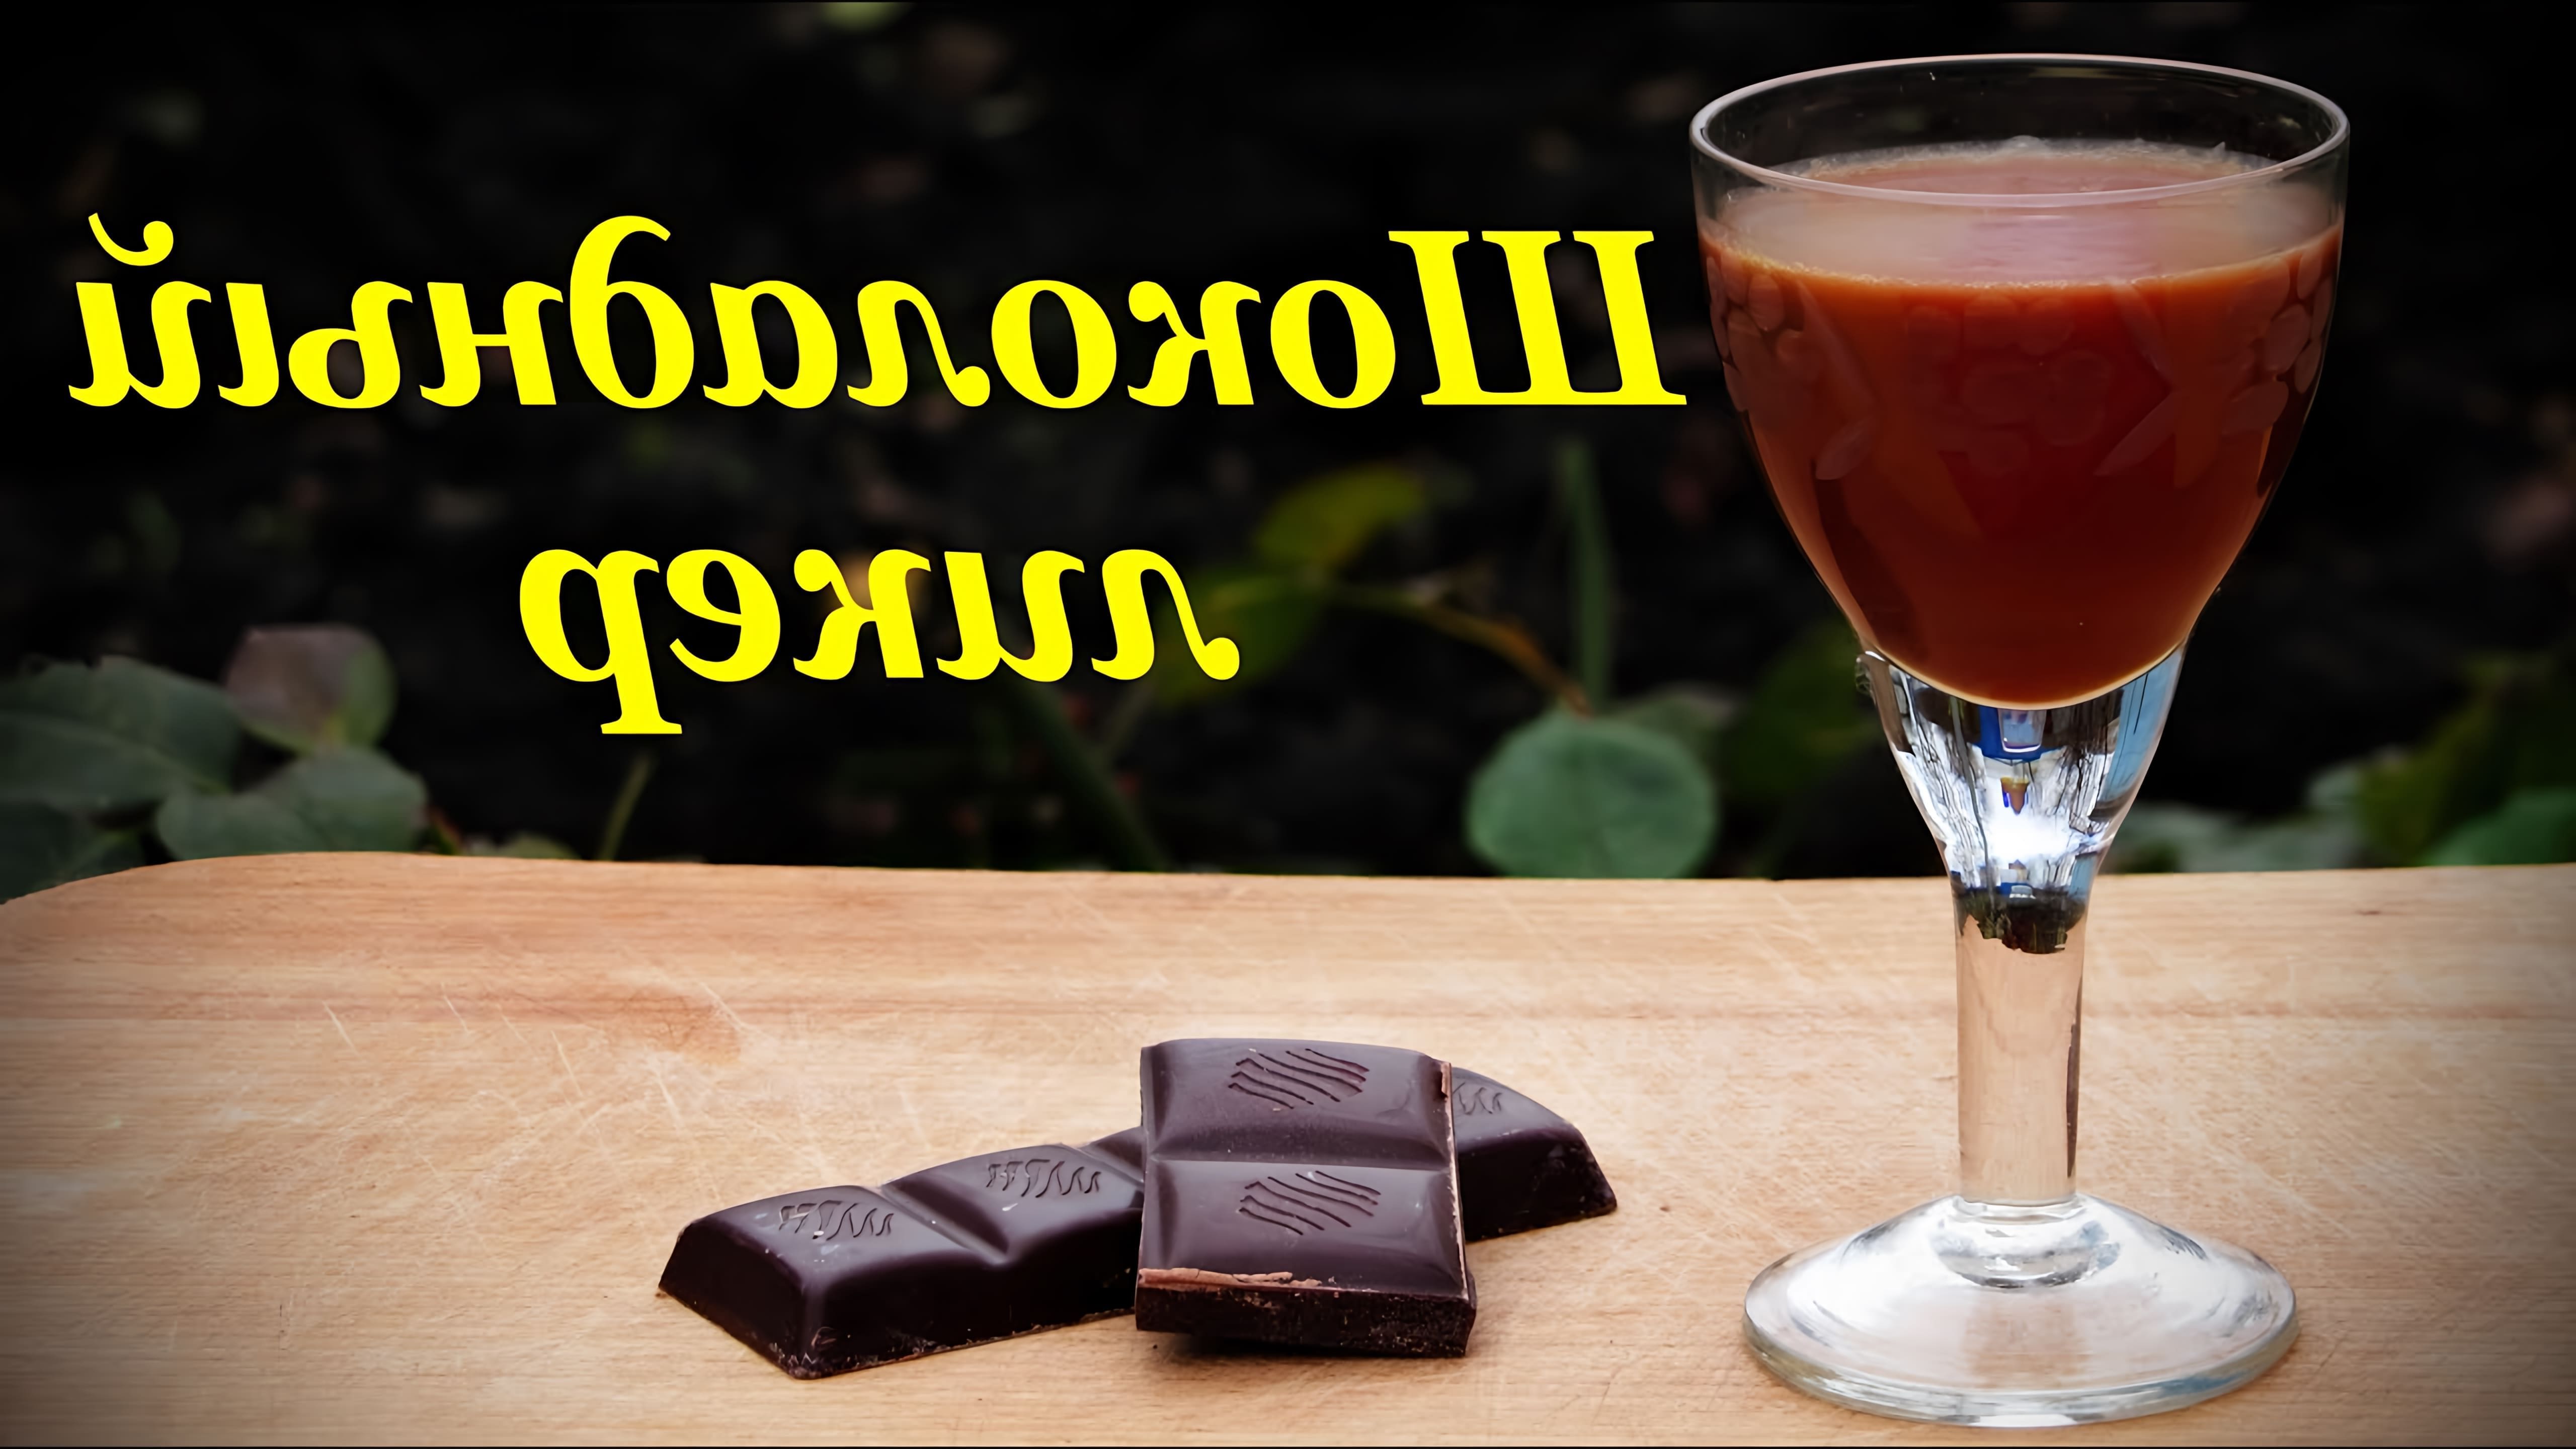 В данном видео демонстрируется процесс приготовления шоколадного ликера в домашних условиях